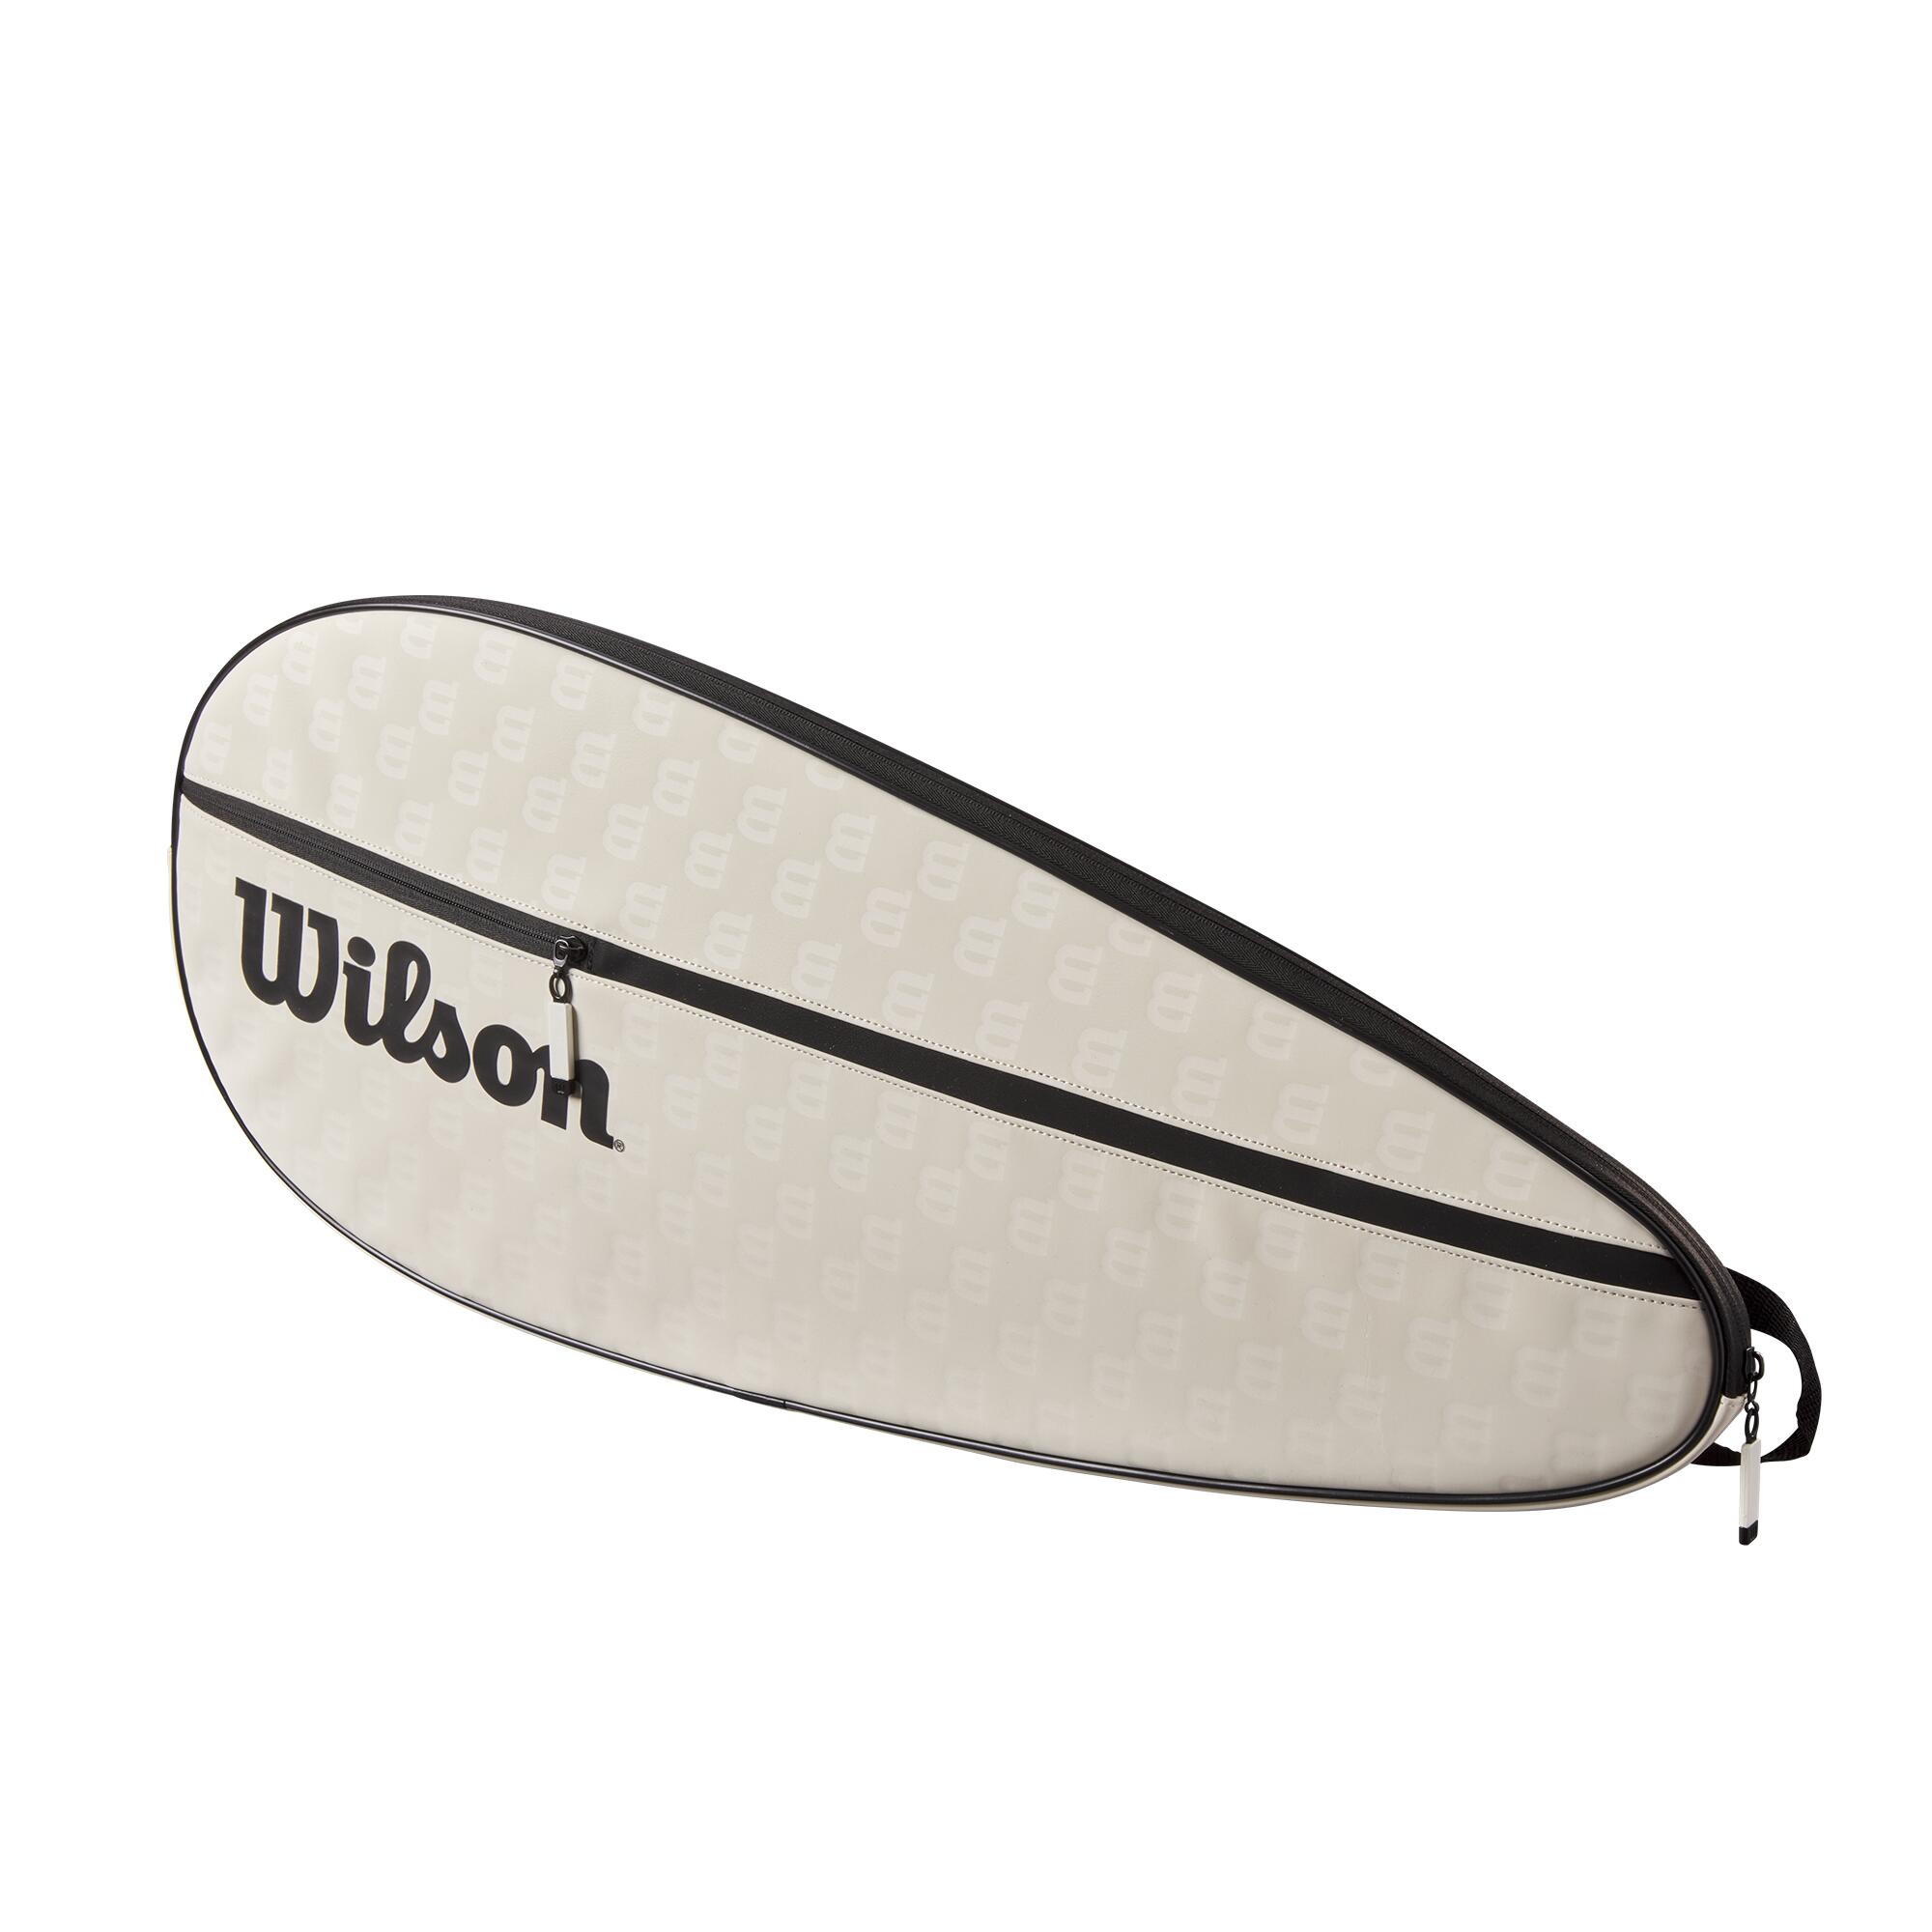 WILSON Wilson Premium Full Length Performance Tennis Racket Cover